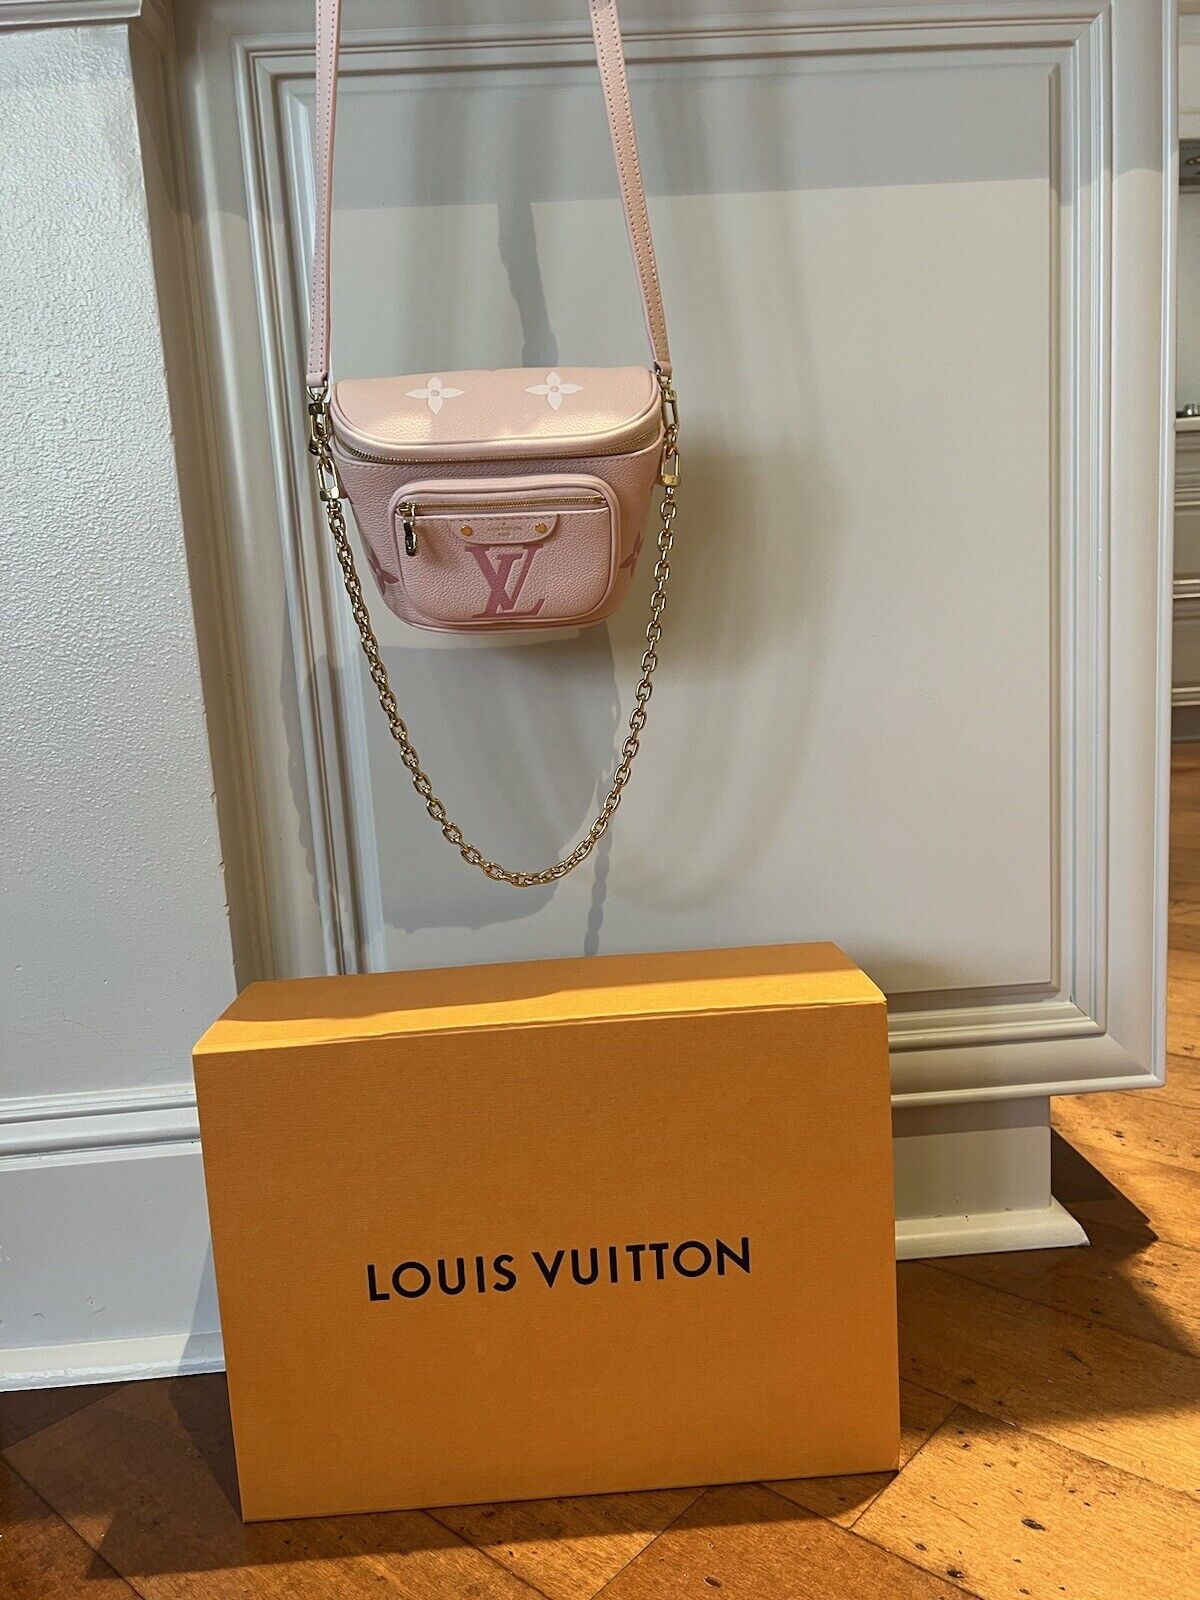 Louis Vuitton's New mini bum bag #minibumbag#lvbumbag #louisvuittonbu